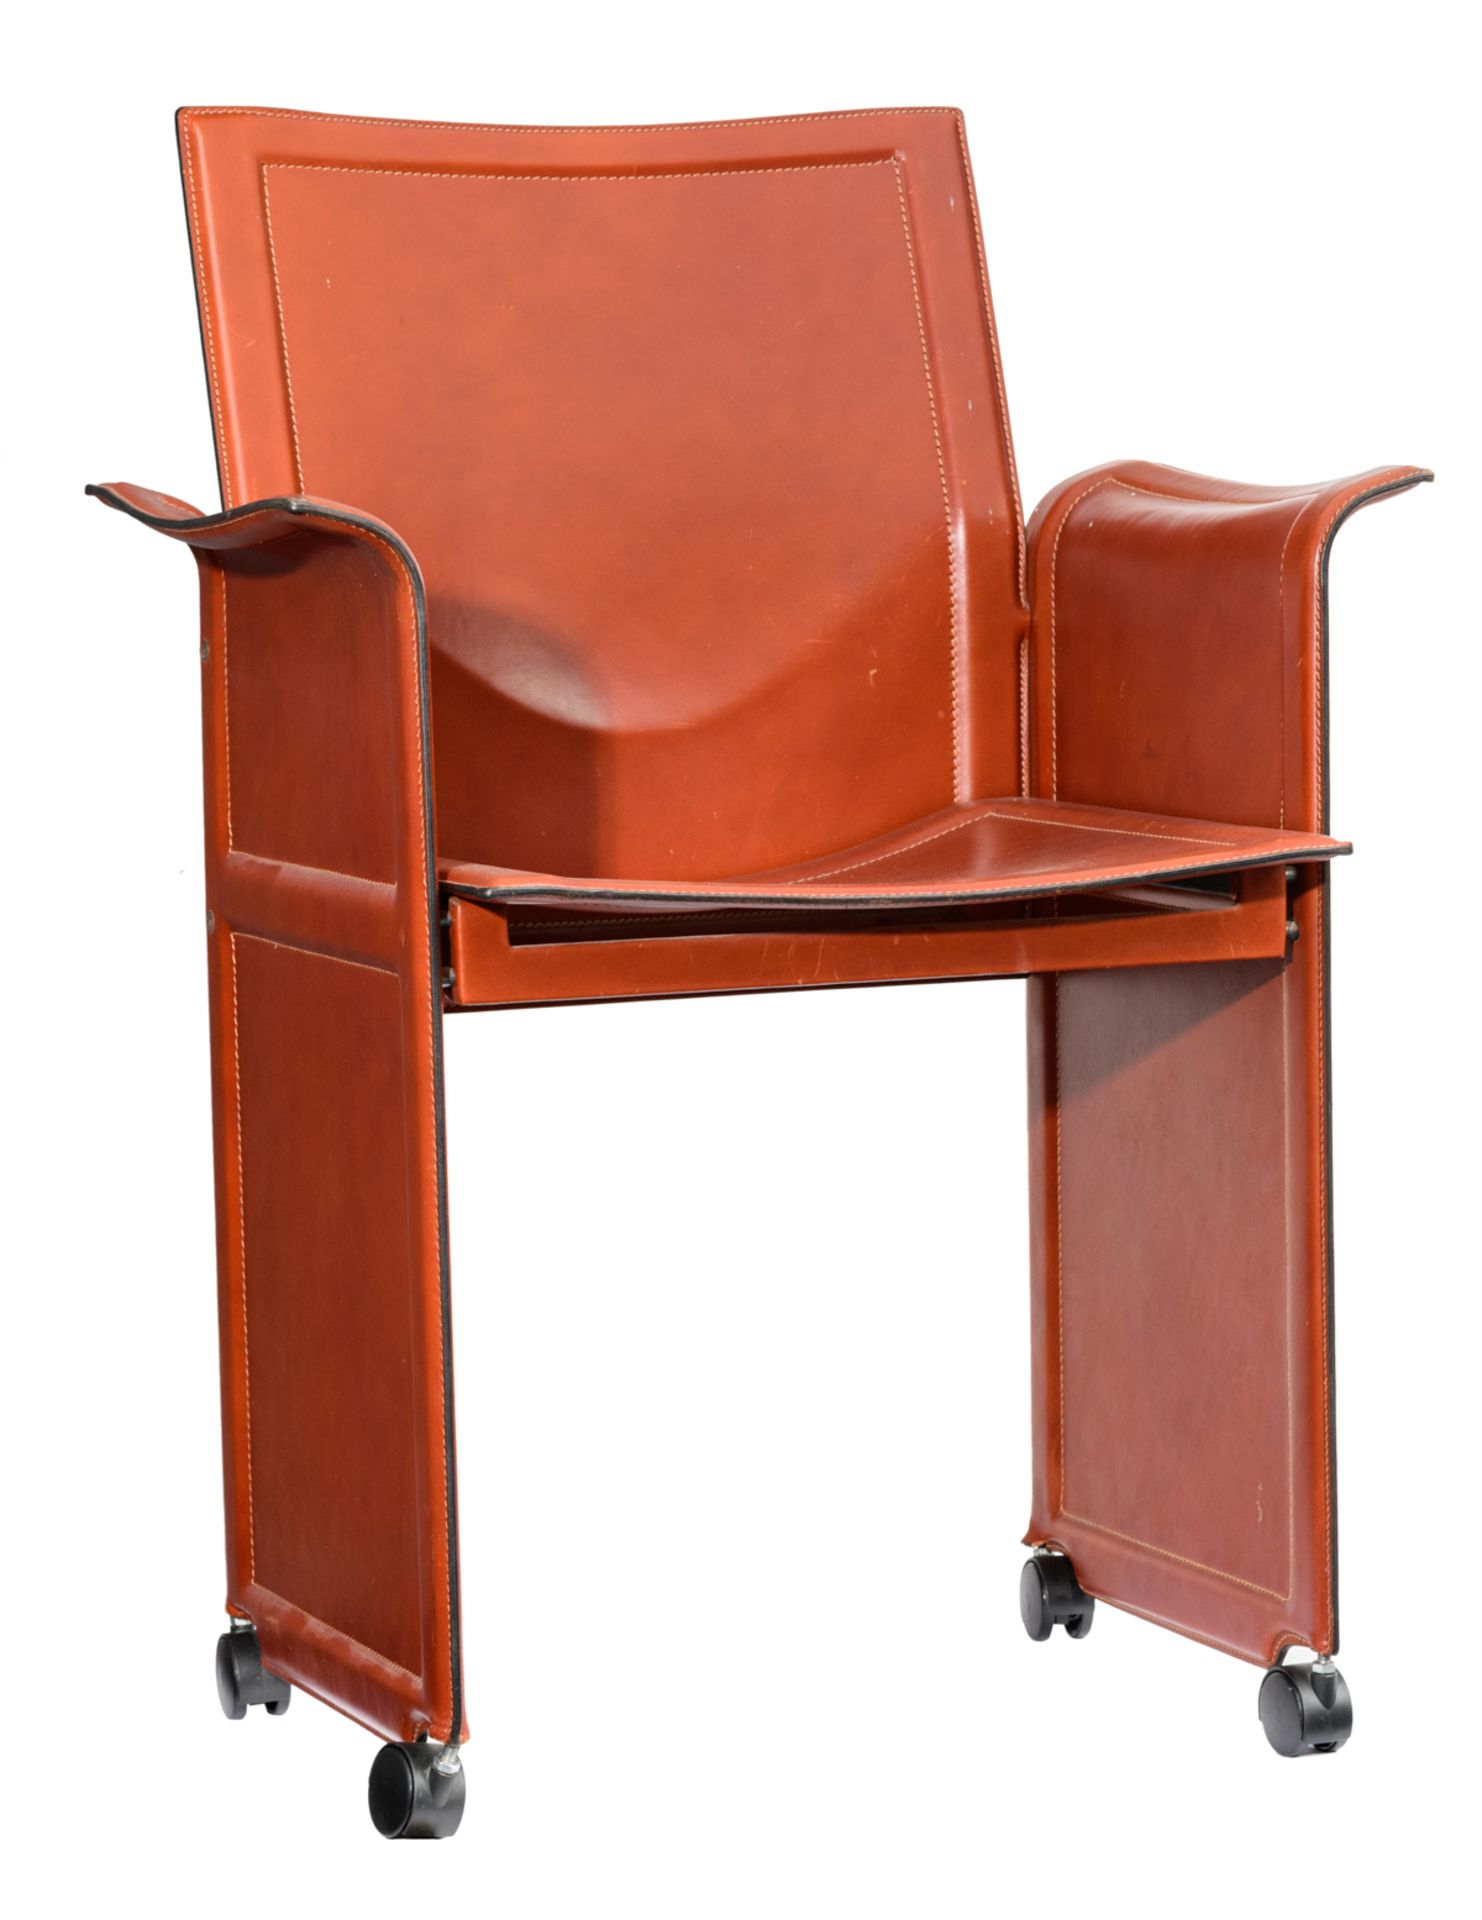 A '70s design cognac leather Corium armchair, design by Tito Agnoli for Matteo Grassi, H 90 - W 63 -